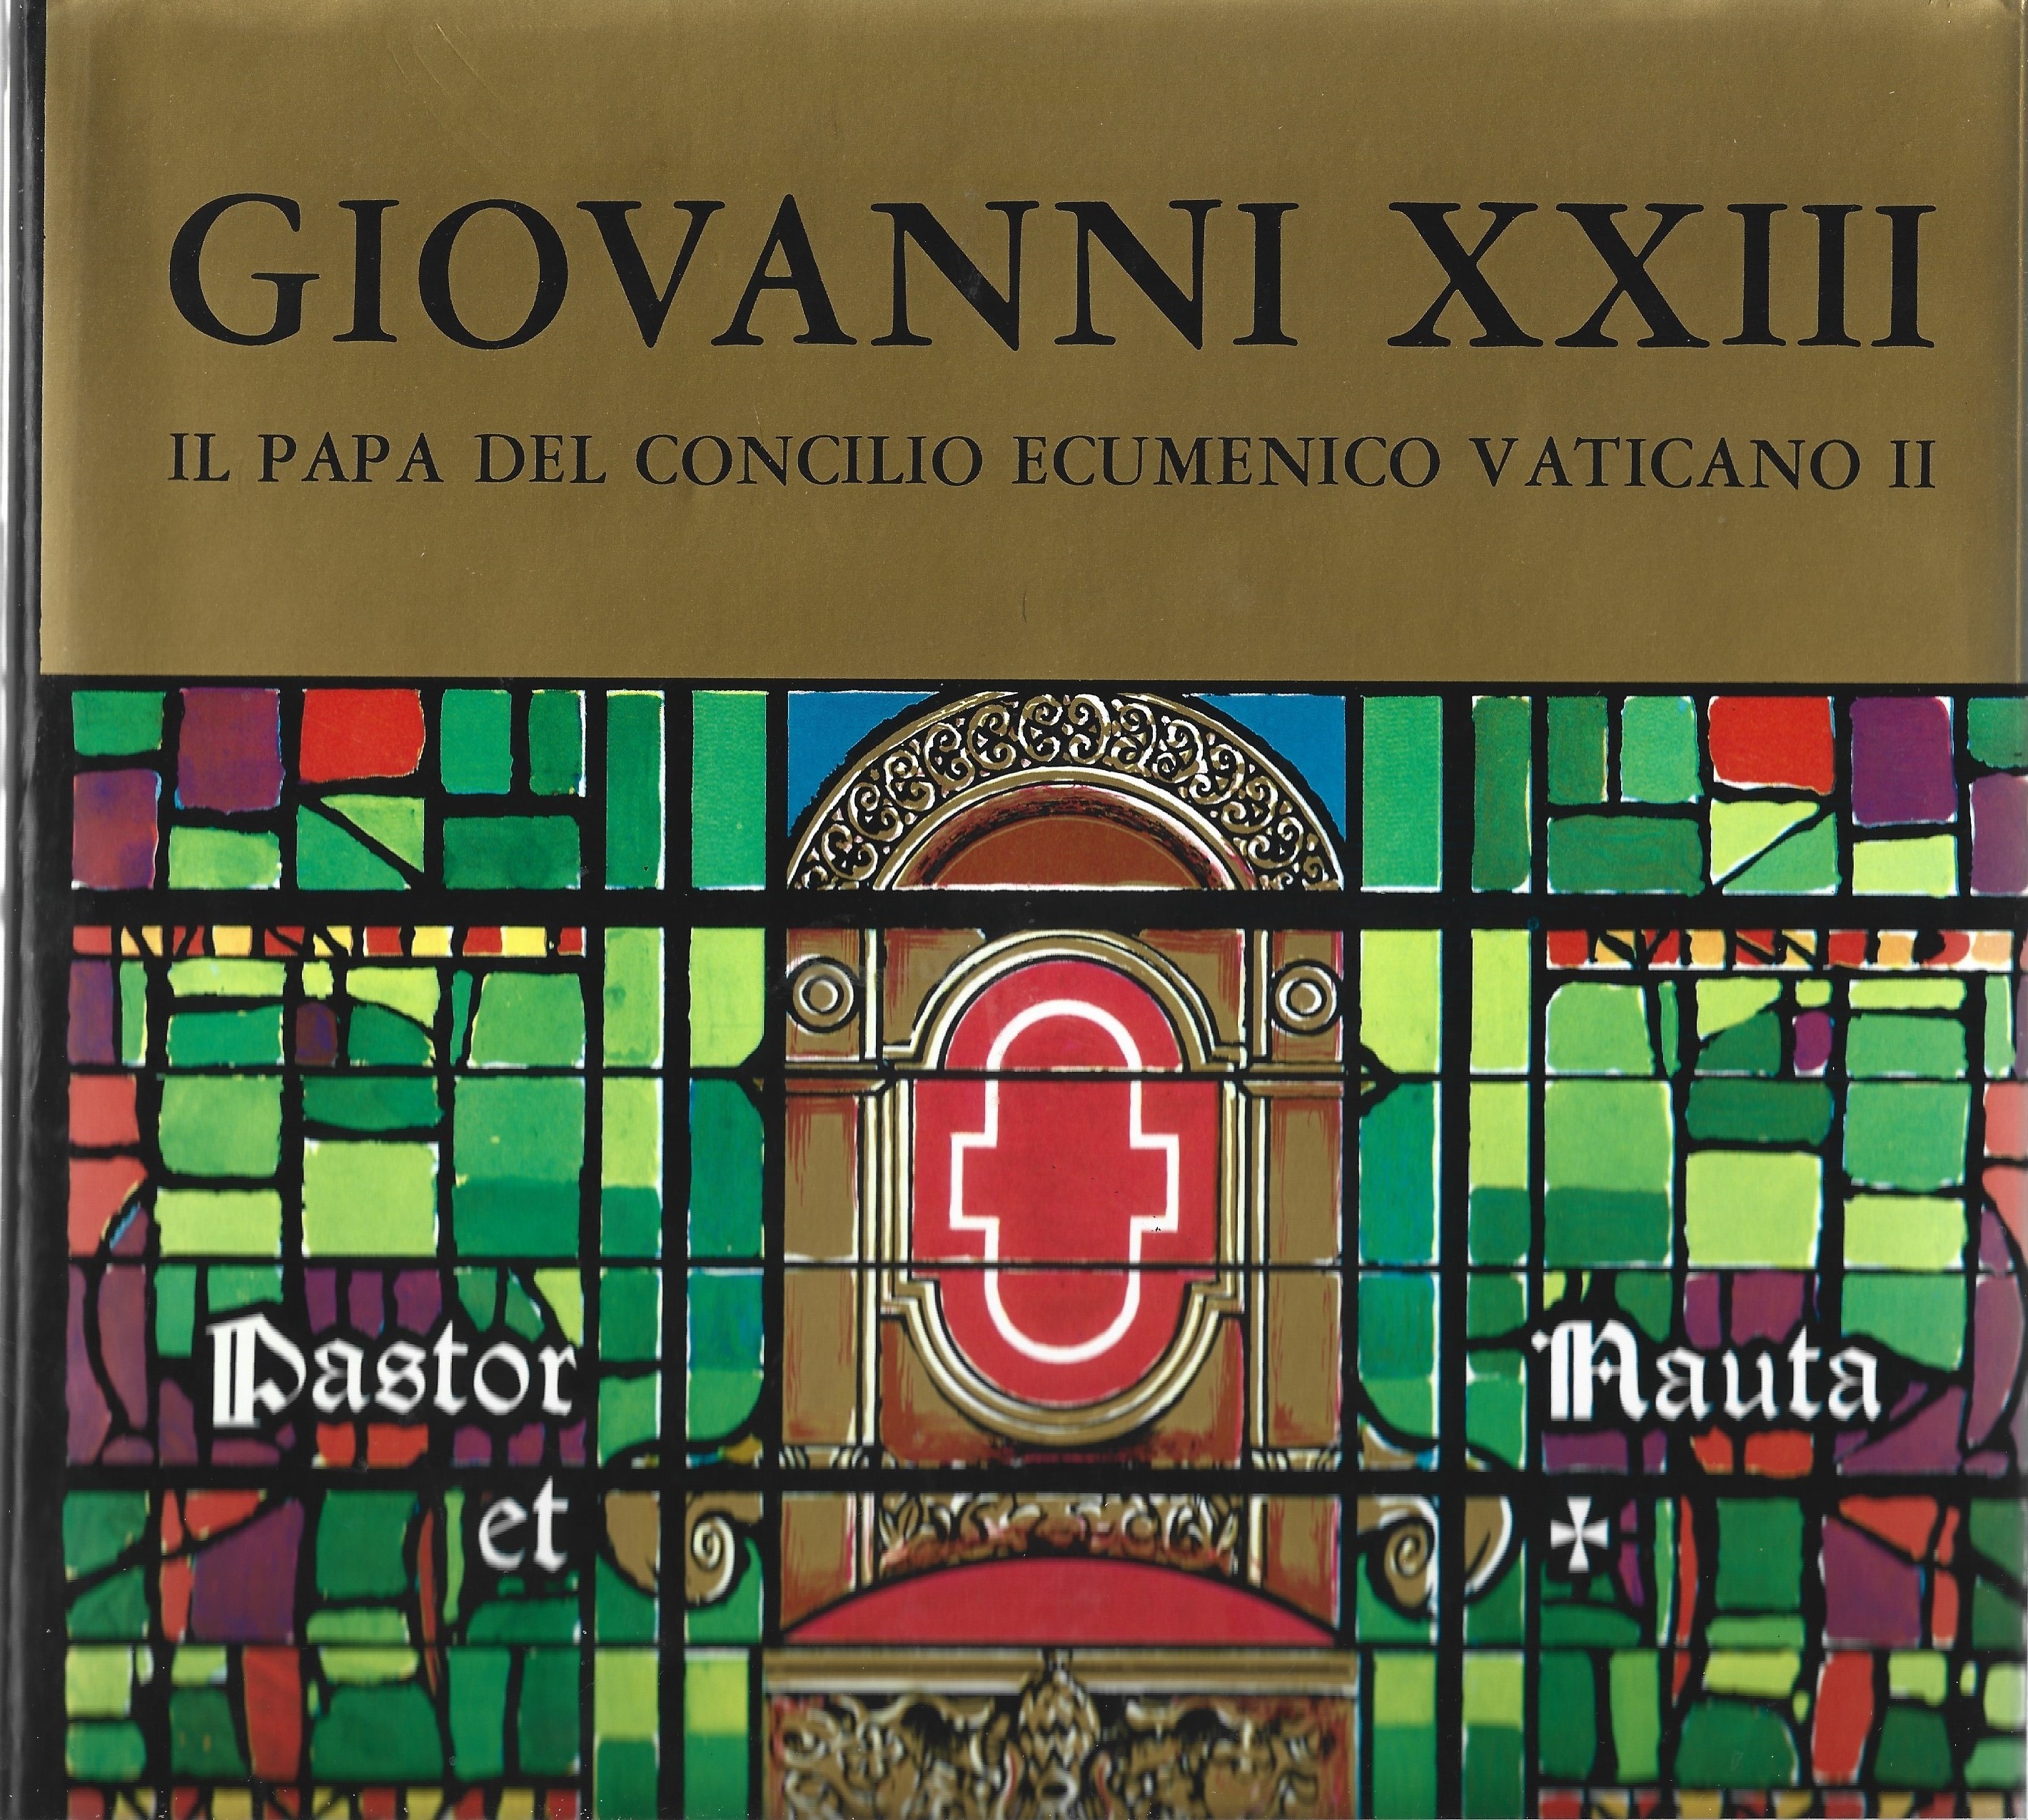 GIOVANNI XXIII Il Papa del Concilio Ecumenico Vaticano II.